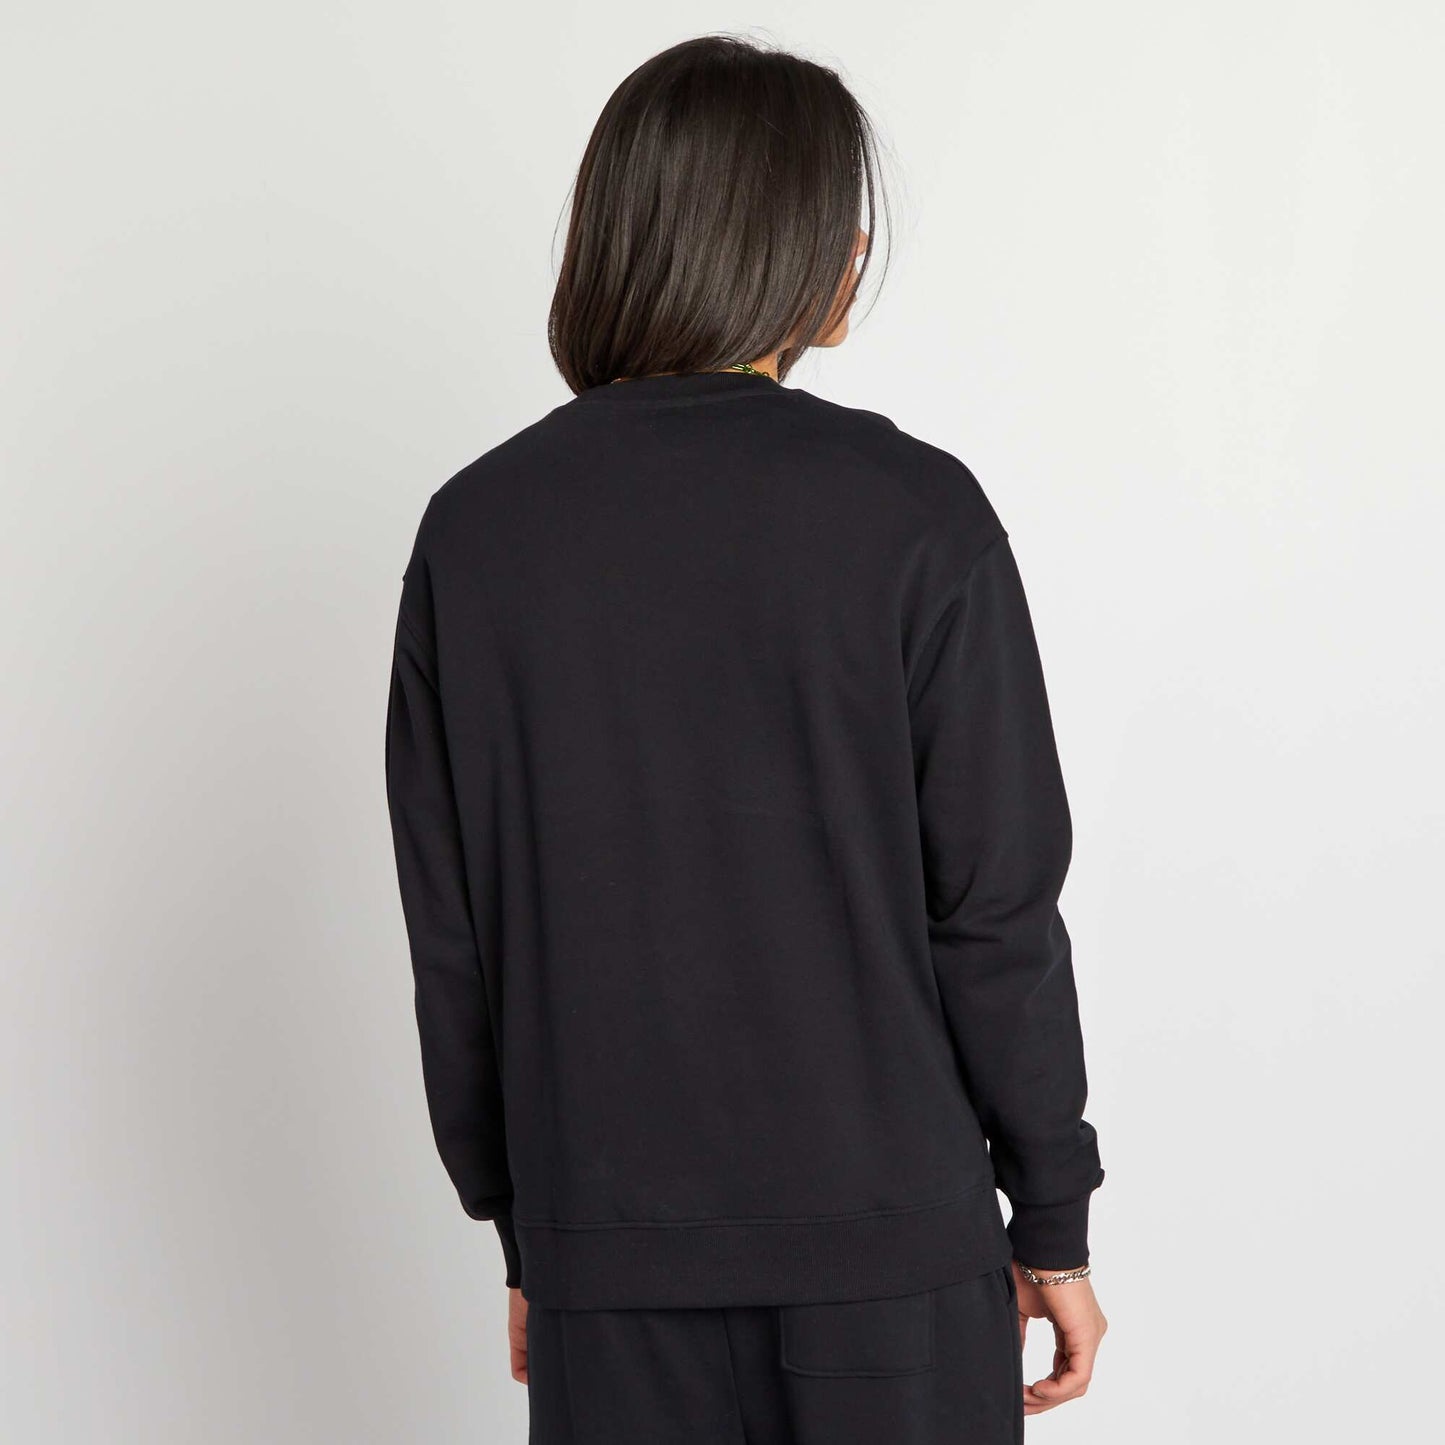 Patterned round-neck sweatshirt black